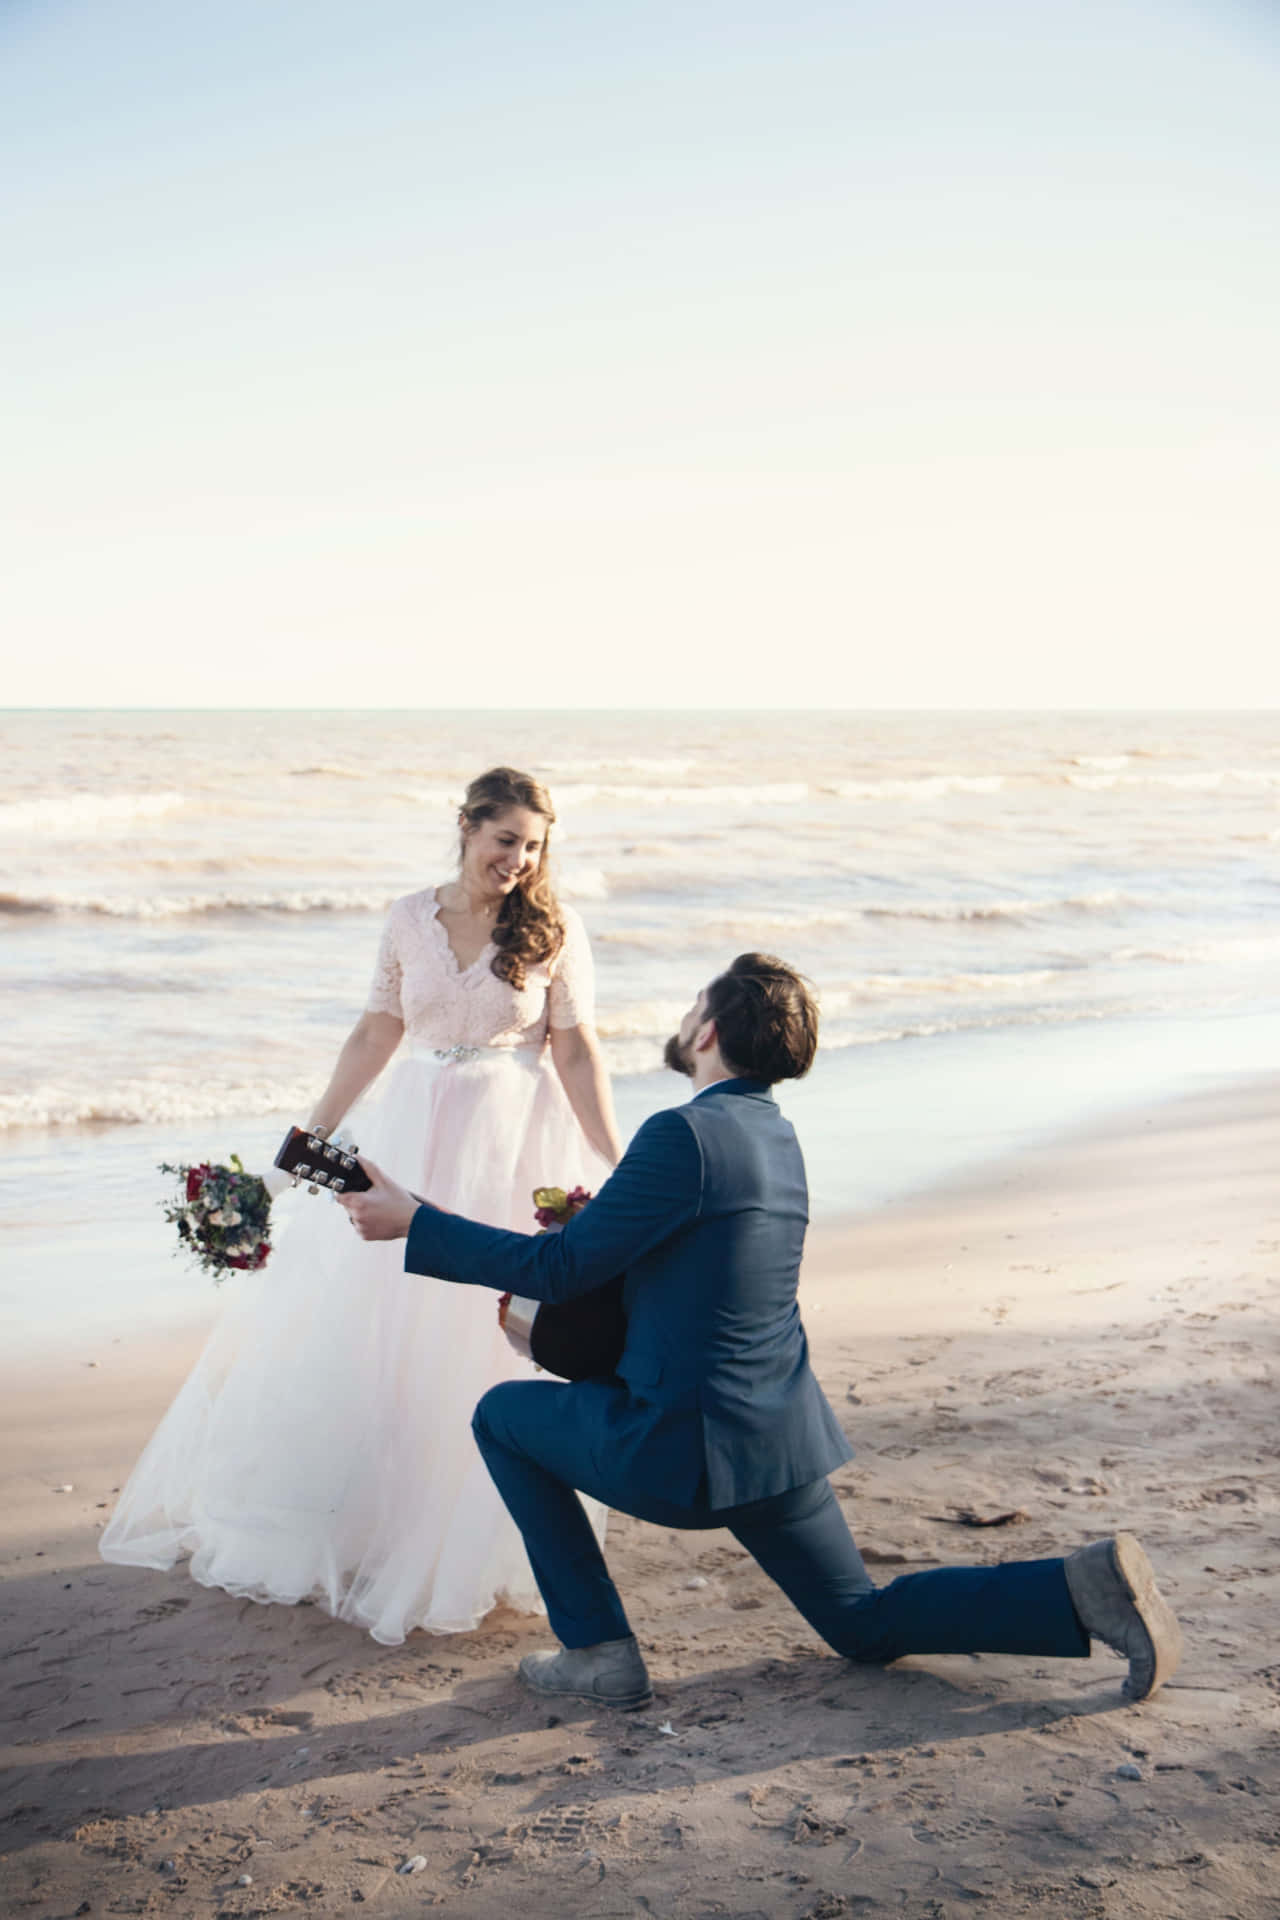 Imagende Propuesta De Matrimonio En La Playa.